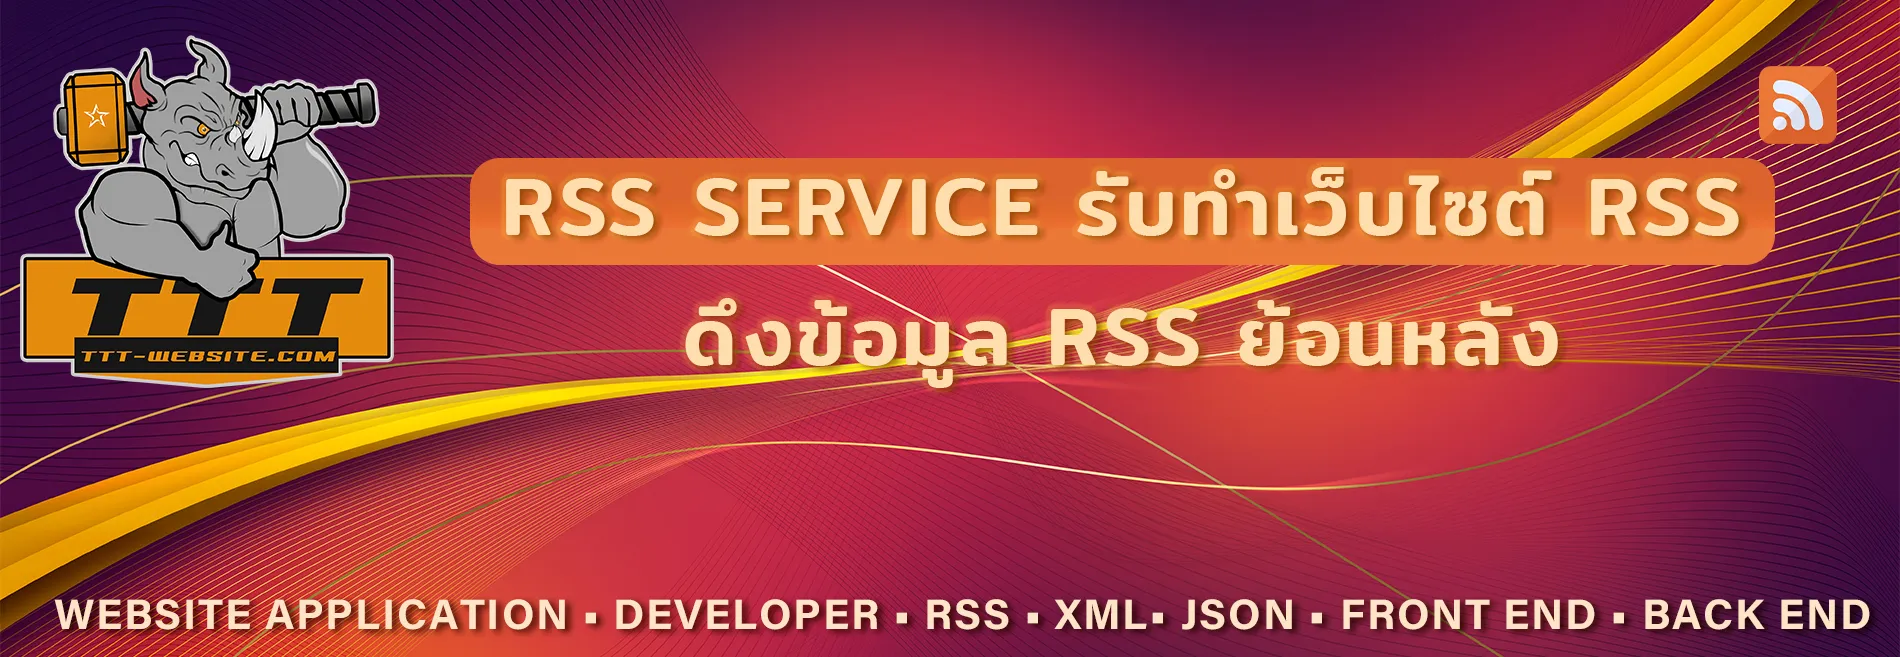 บริการ รับทำ RSS ย้อนหลัง